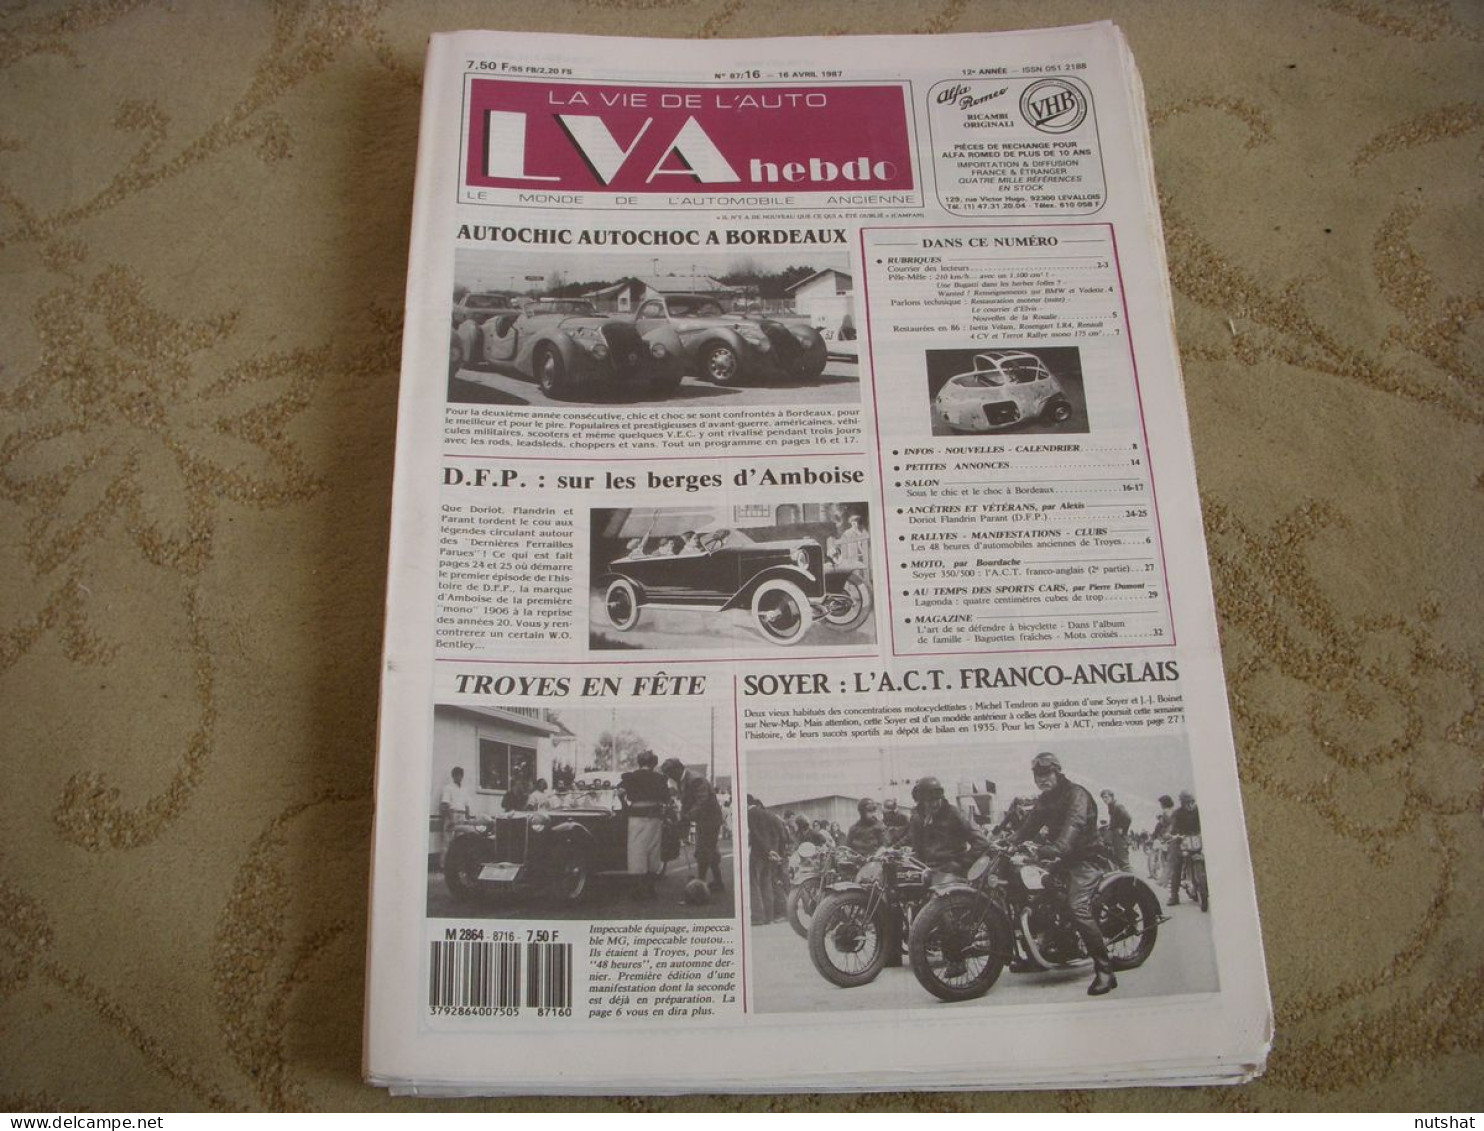 LVA VIE De L'AUTO 87/16 04.1987 DORIOT FLANDRIN PARANT SOYER 350 AUTO CHIC CHOC - Auto/Moto